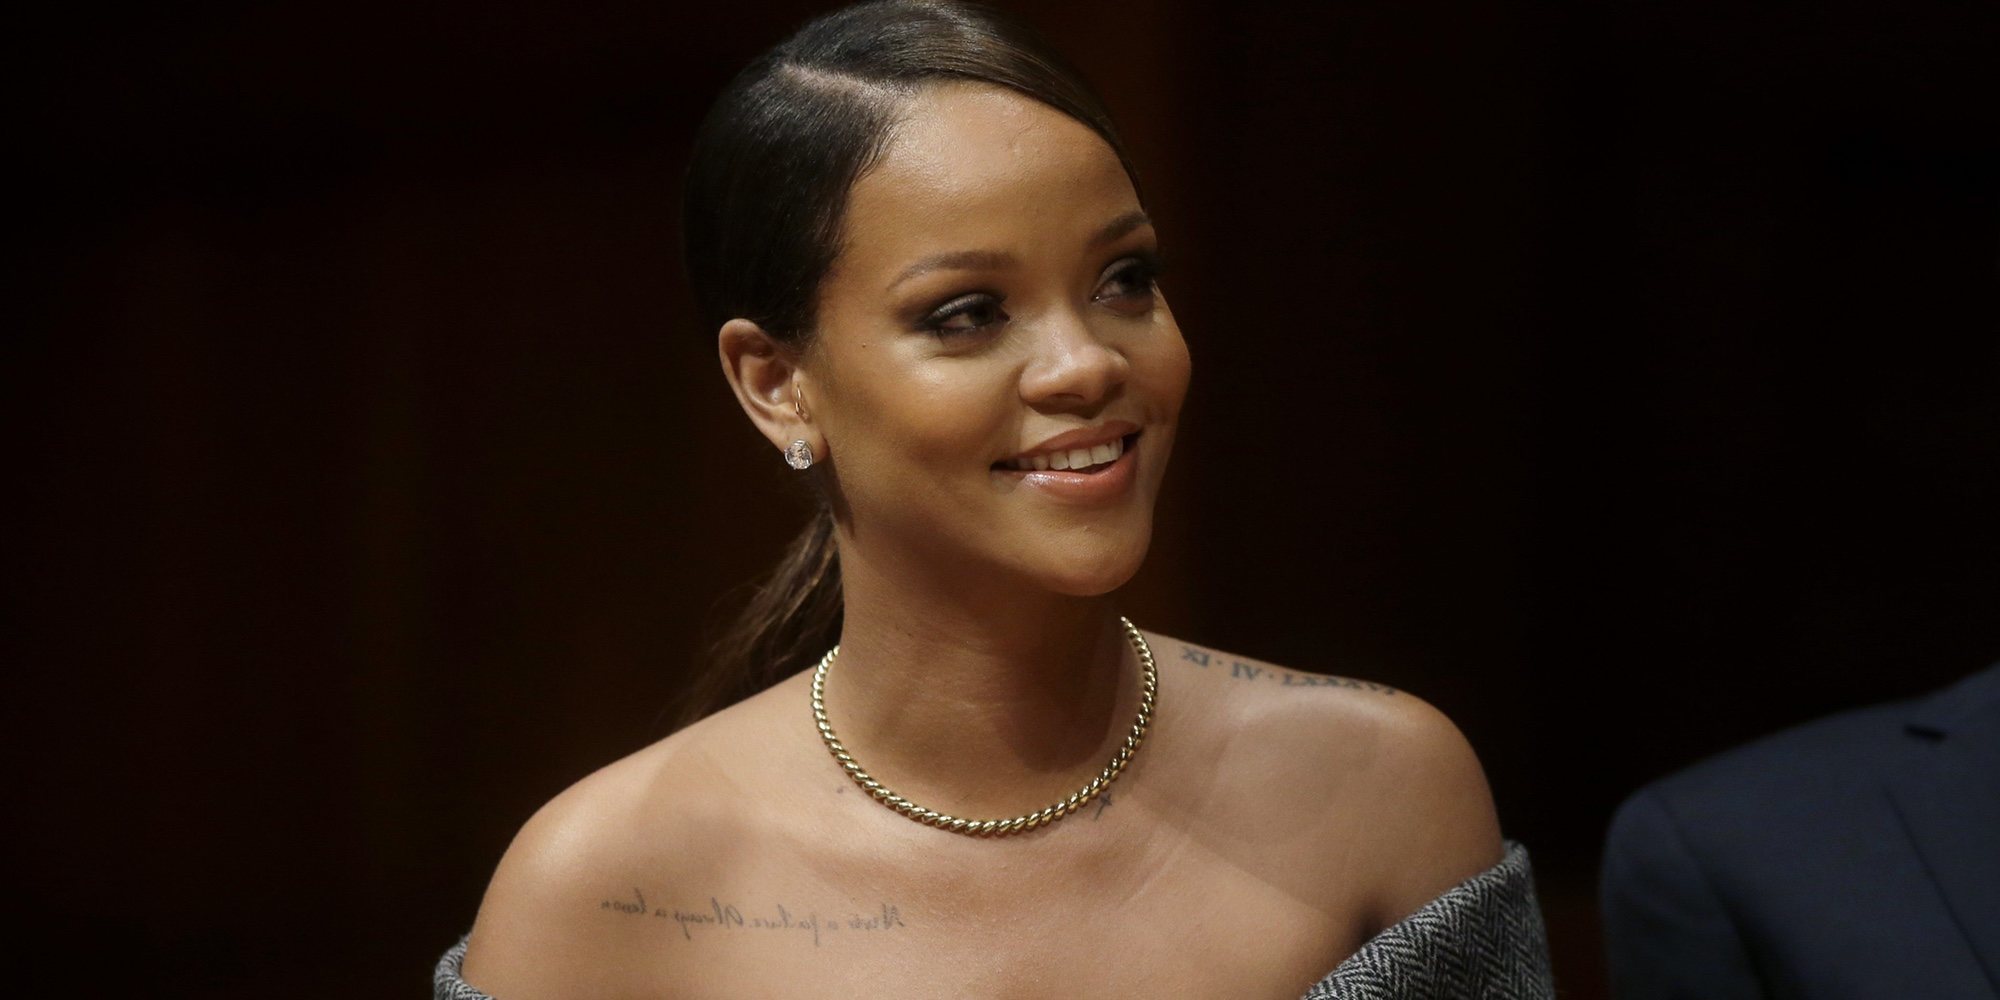 Rihanna responde a la polémica sobre su aumento de peso: "Quiero perder un poco, pero no todo"